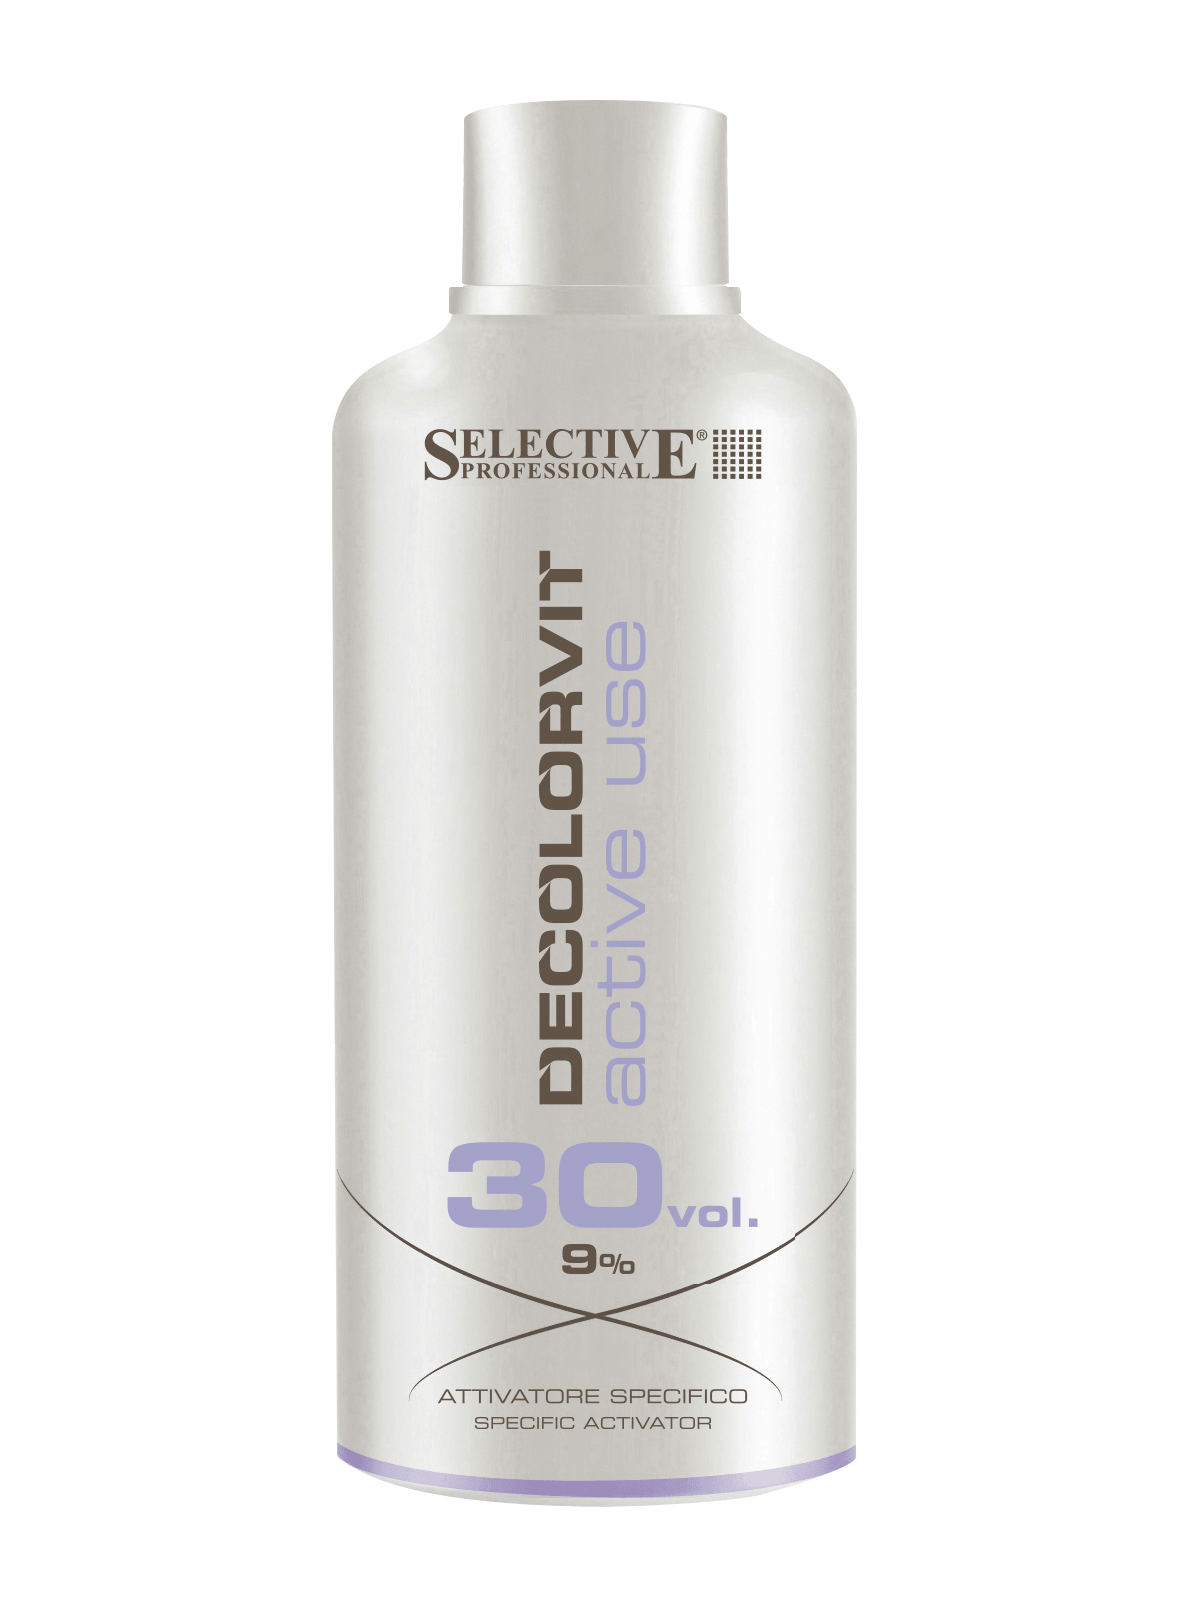 Окислители для волос:  SELECTIVE PROFESSIONAL -  Специальный активатор Decolorvit Active Use 9% (750 мл)